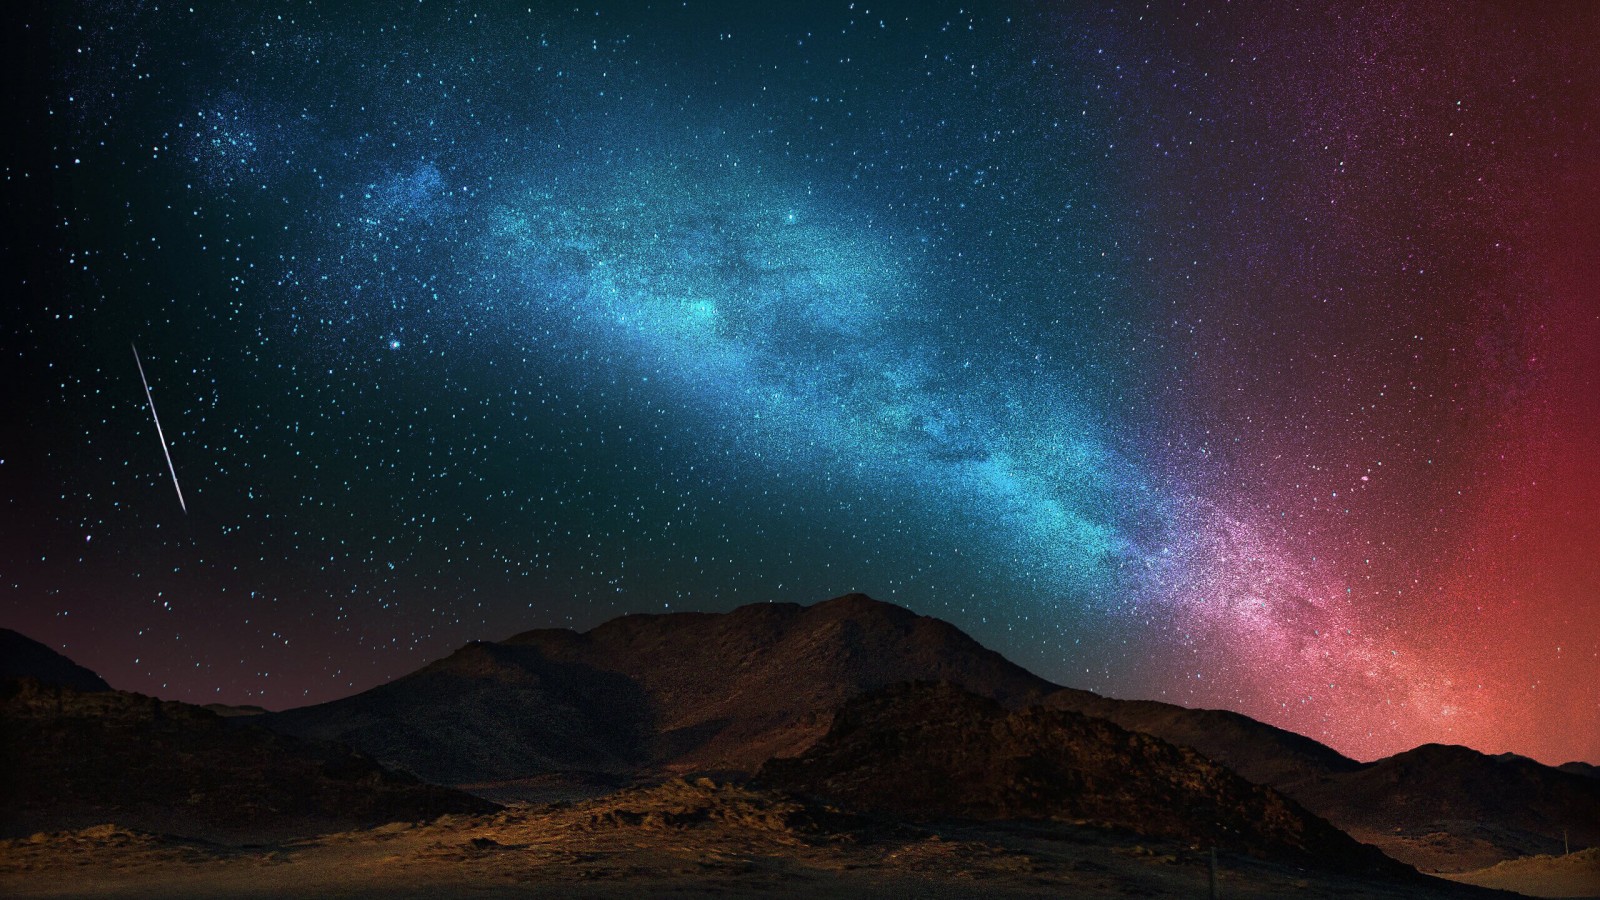 Starry Night Over The Desert Wallpaper for Desktop 1600x900